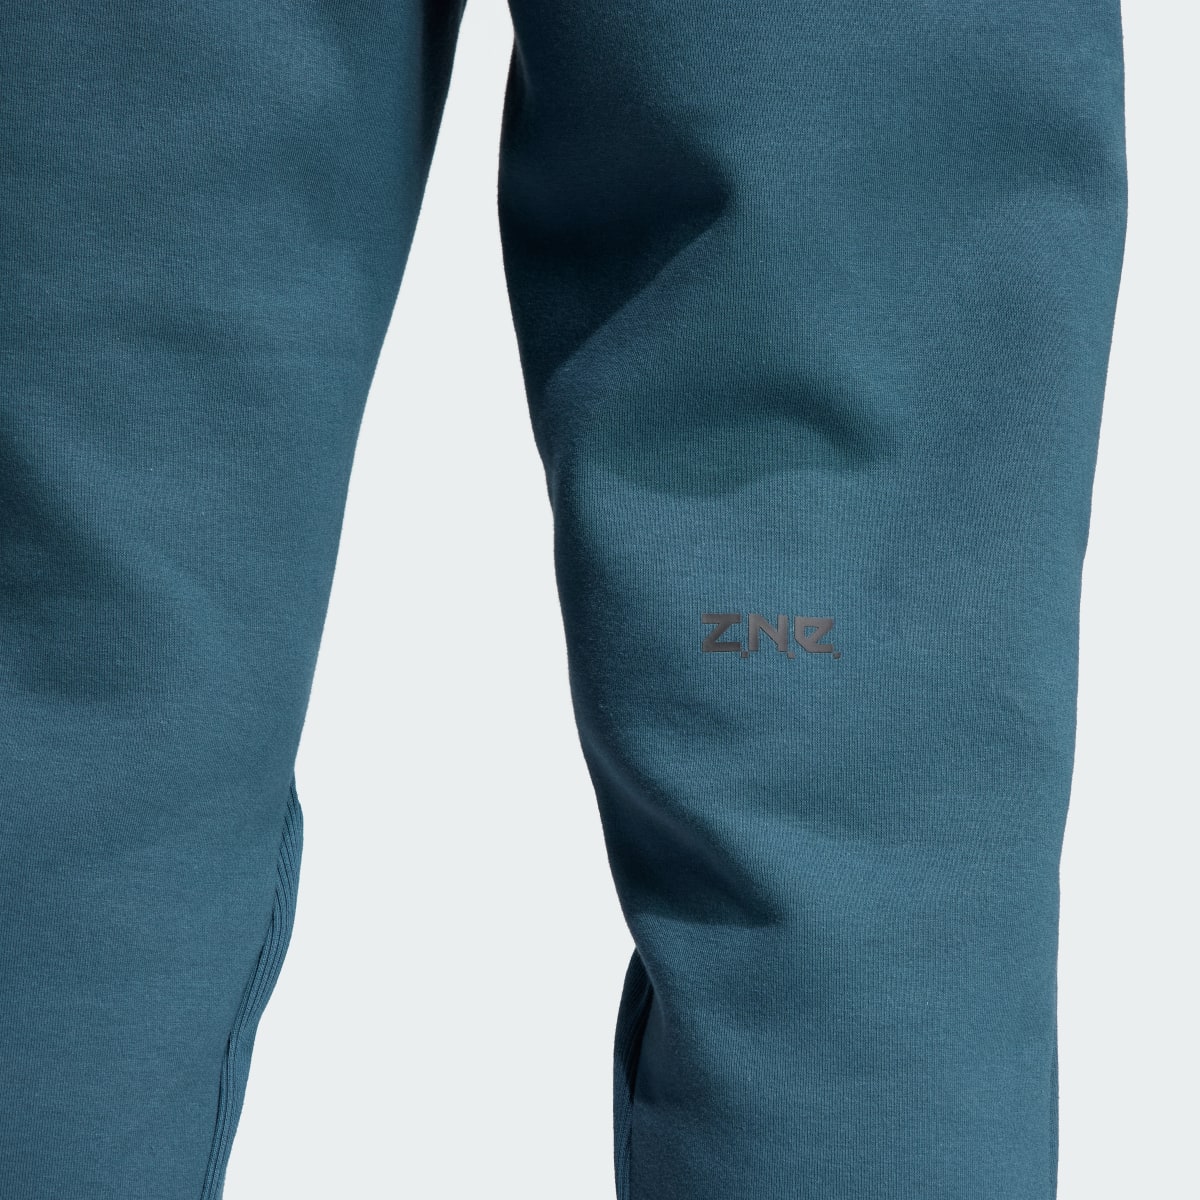 Adidas Pants Z.N.E. Premium. 8